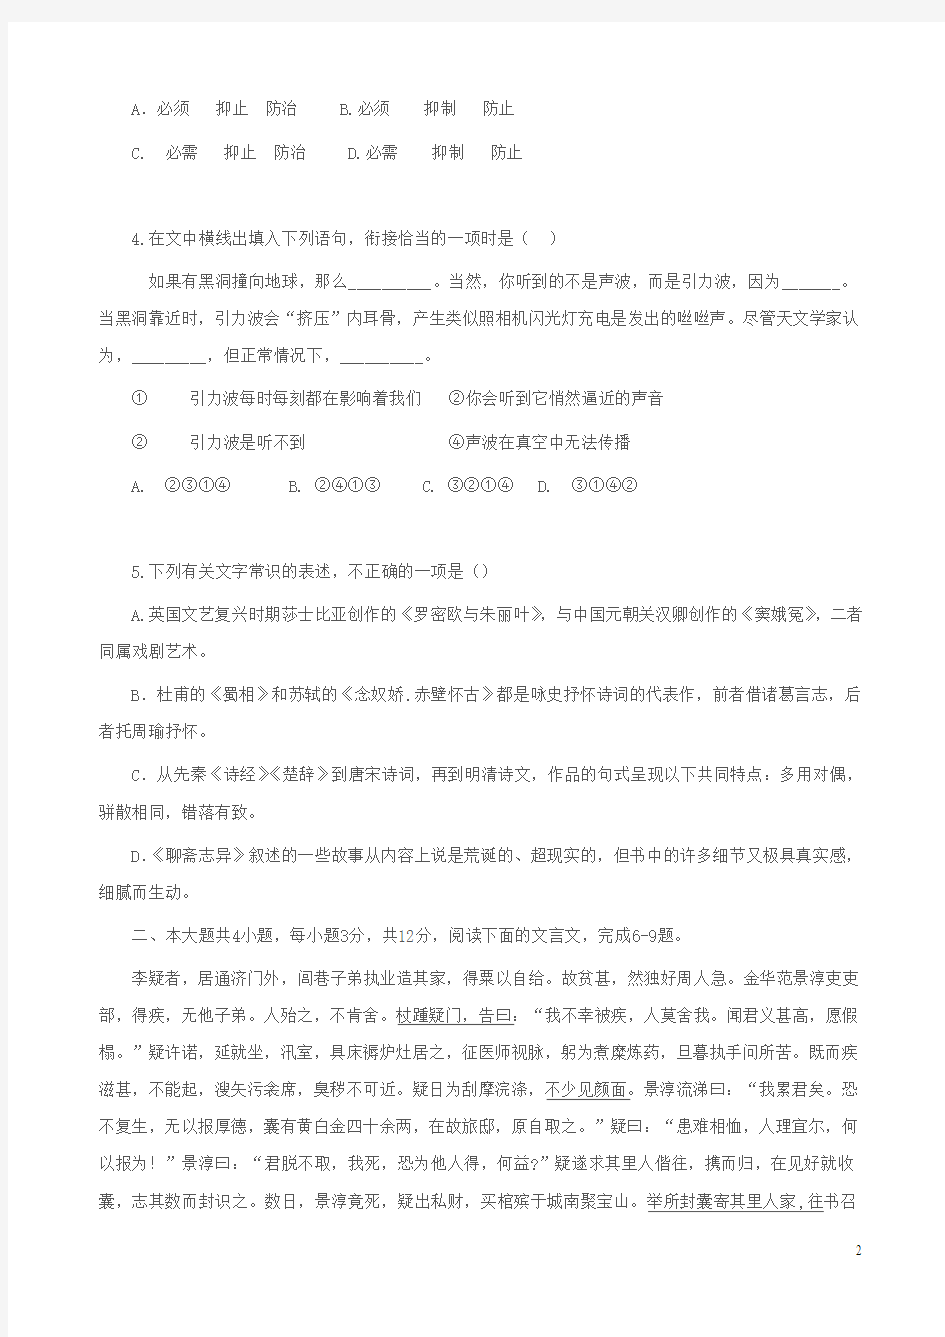 2012年高考北京卷语文试题参考答案及解析